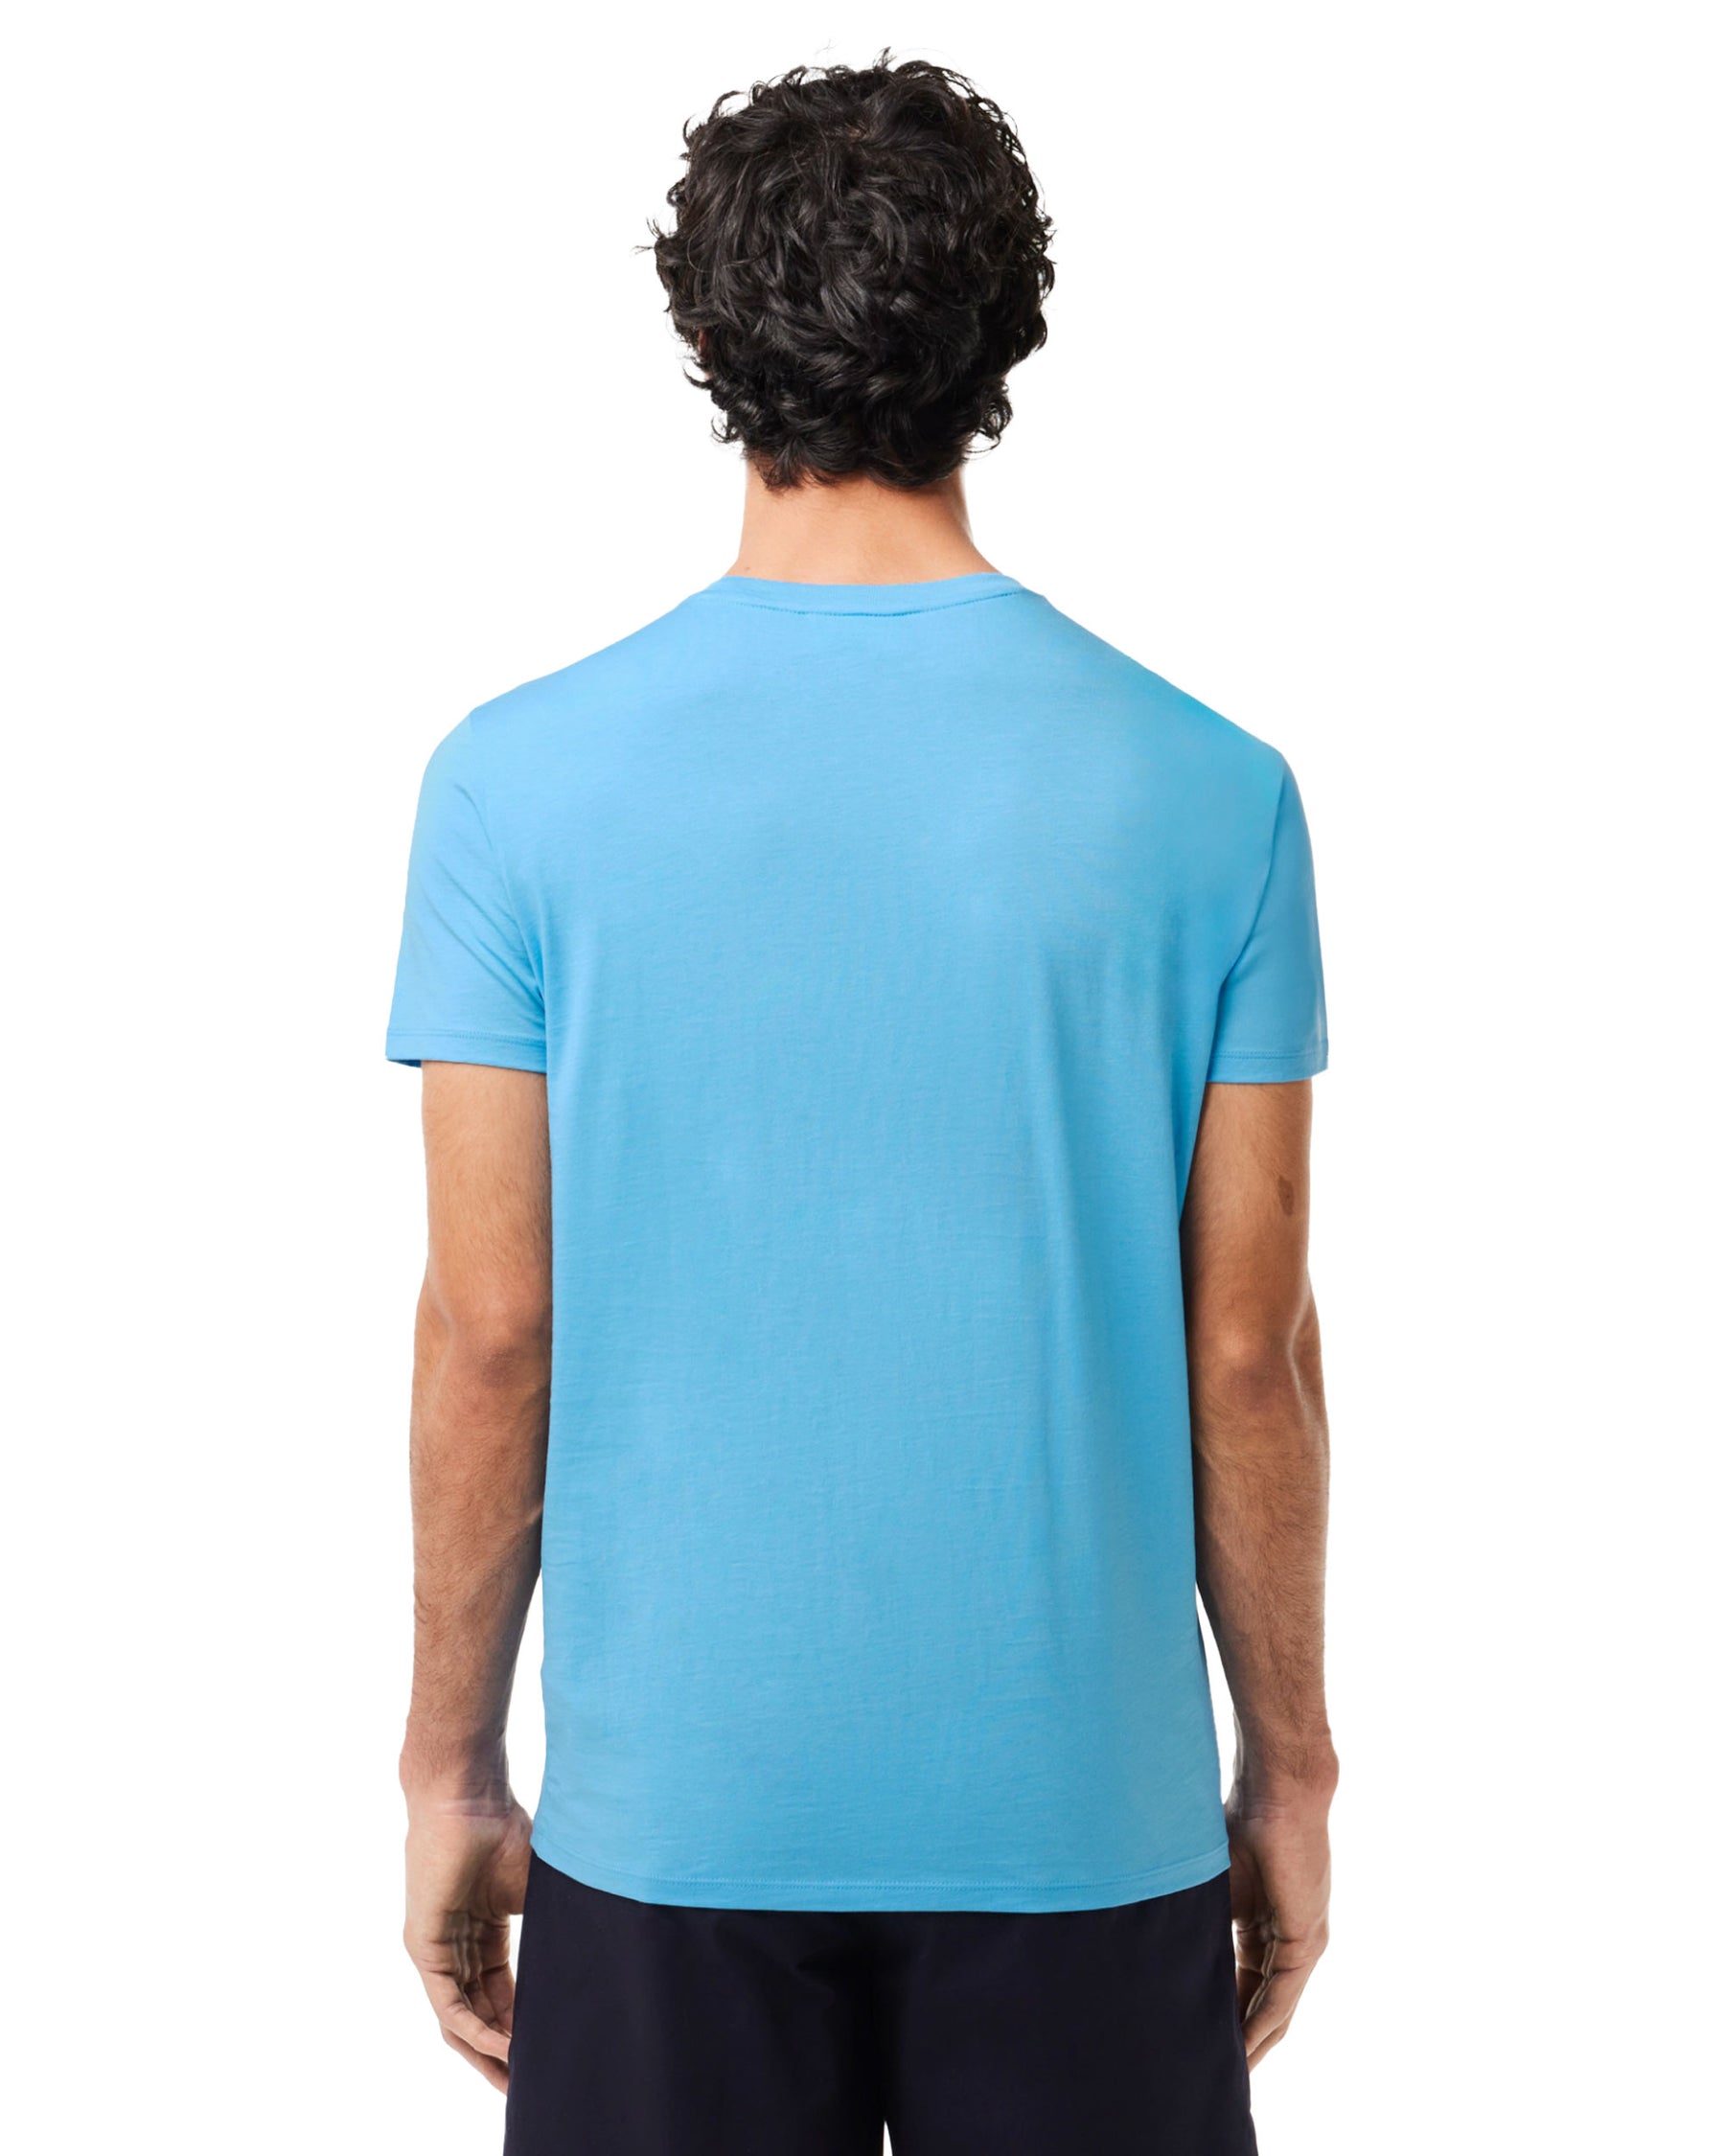 T-Shirt Uomo Lacoste Pima Azzurro